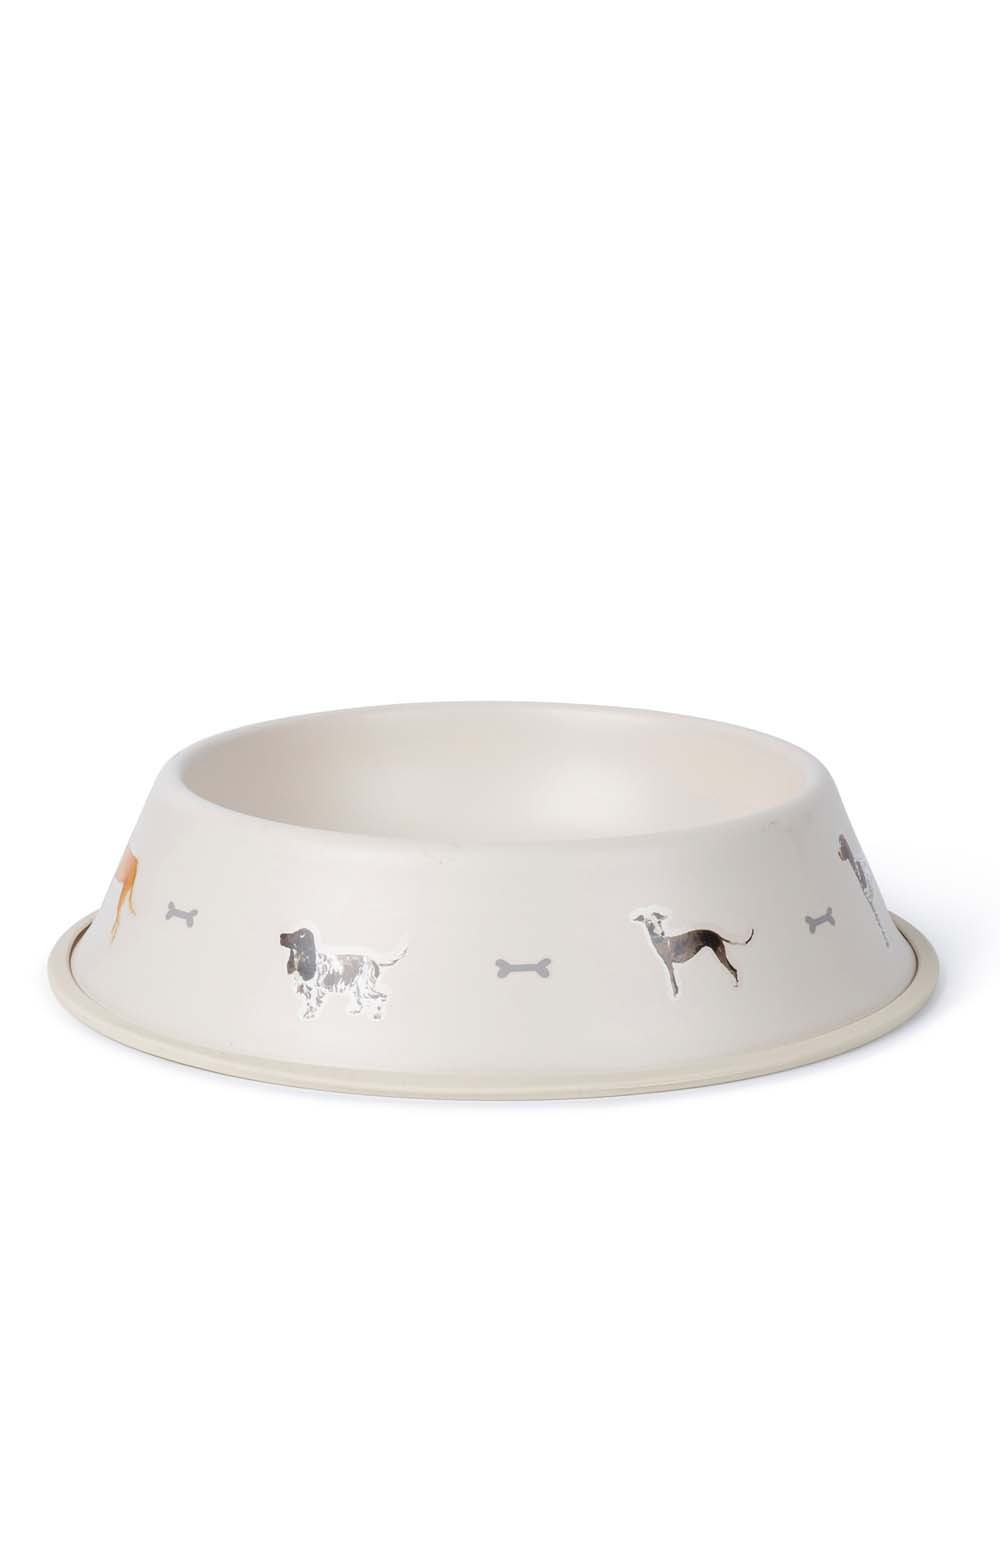 Sophie Allport Woof Dog Bowl | Larger 1L